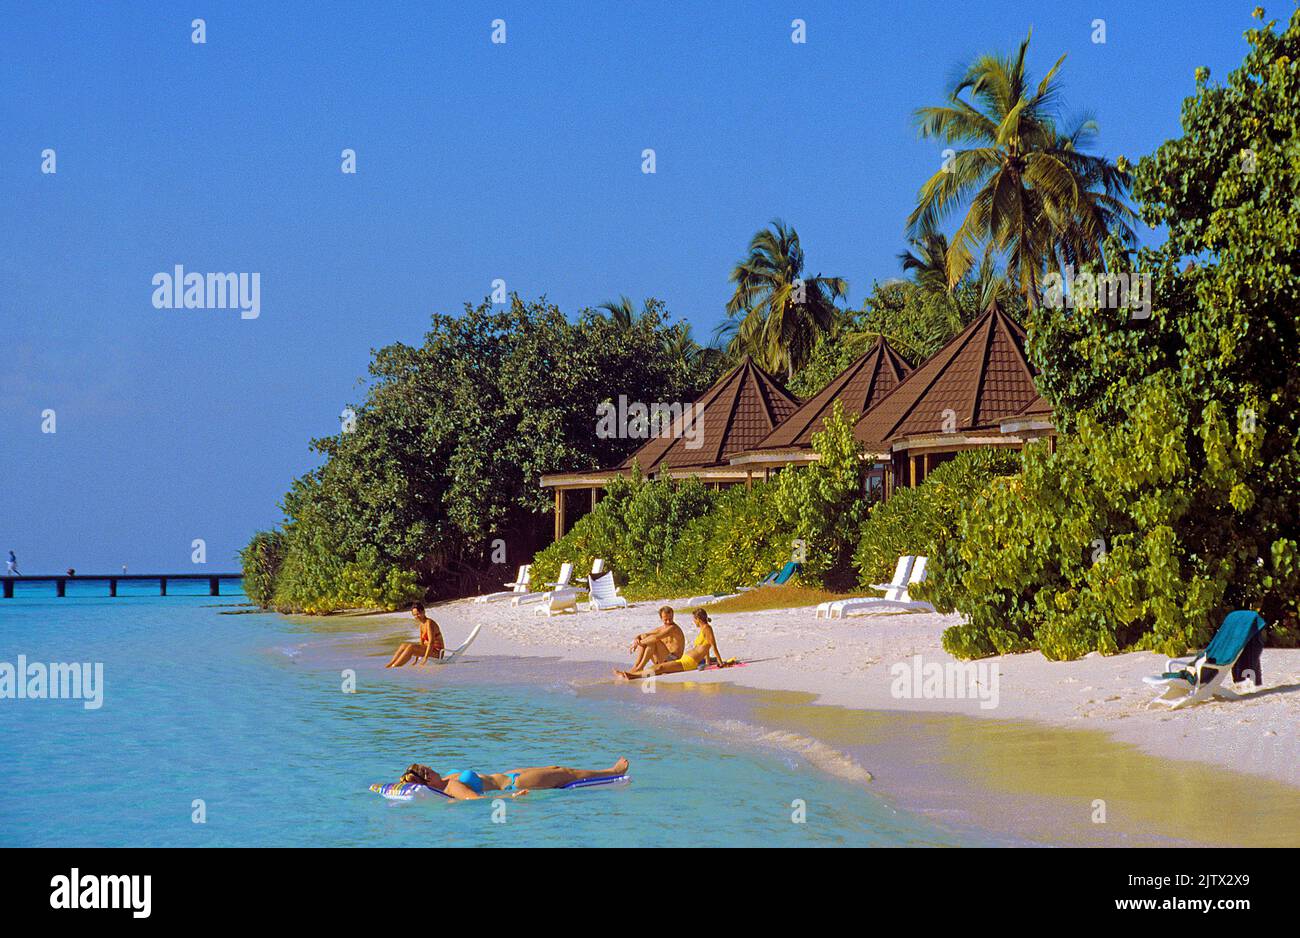 Vie en plage à l'île des maldives Komandhoo, une station touristique à l'atoll de Laviyani, Maldives, océan Indien, Asie Banque D'Images